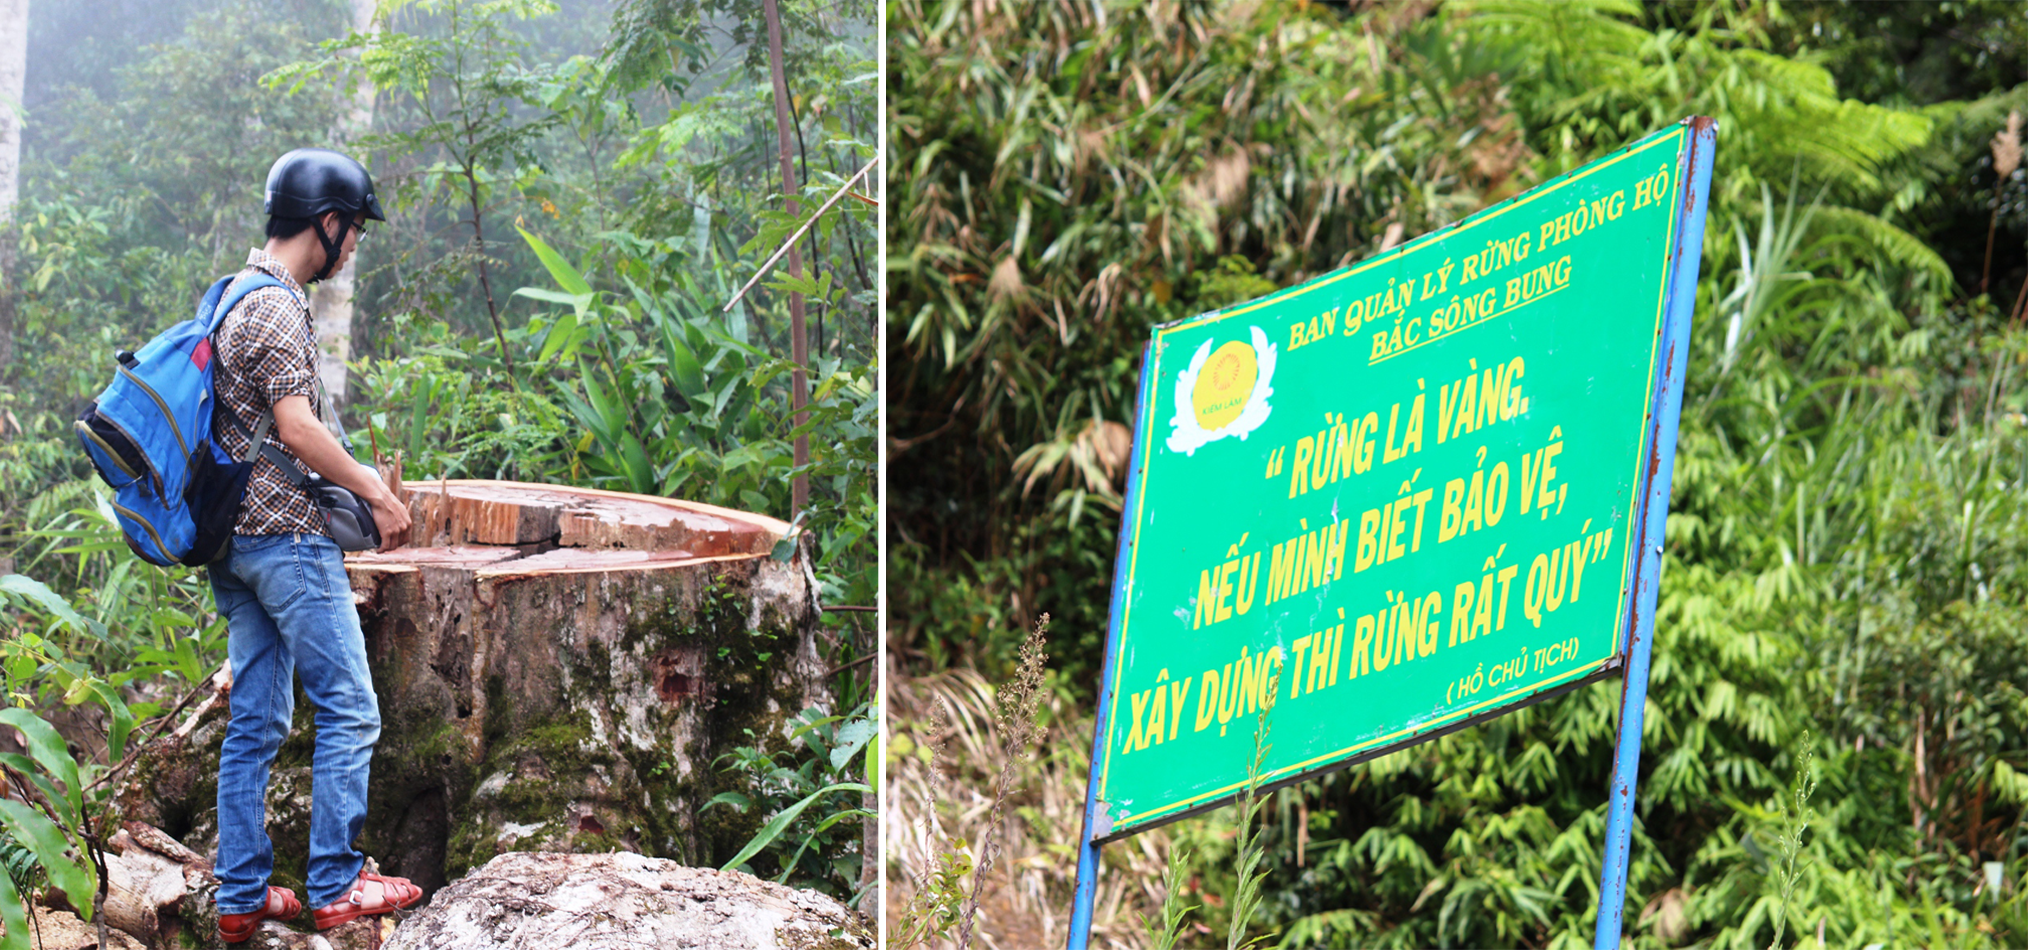 Để có thể tiếp cận được sào huyệt phá rừng này, nhóm phóng viên mất nhiều ngày dò hỏi, nắm bắt tình hình. (Ảnh: Vietnam+)